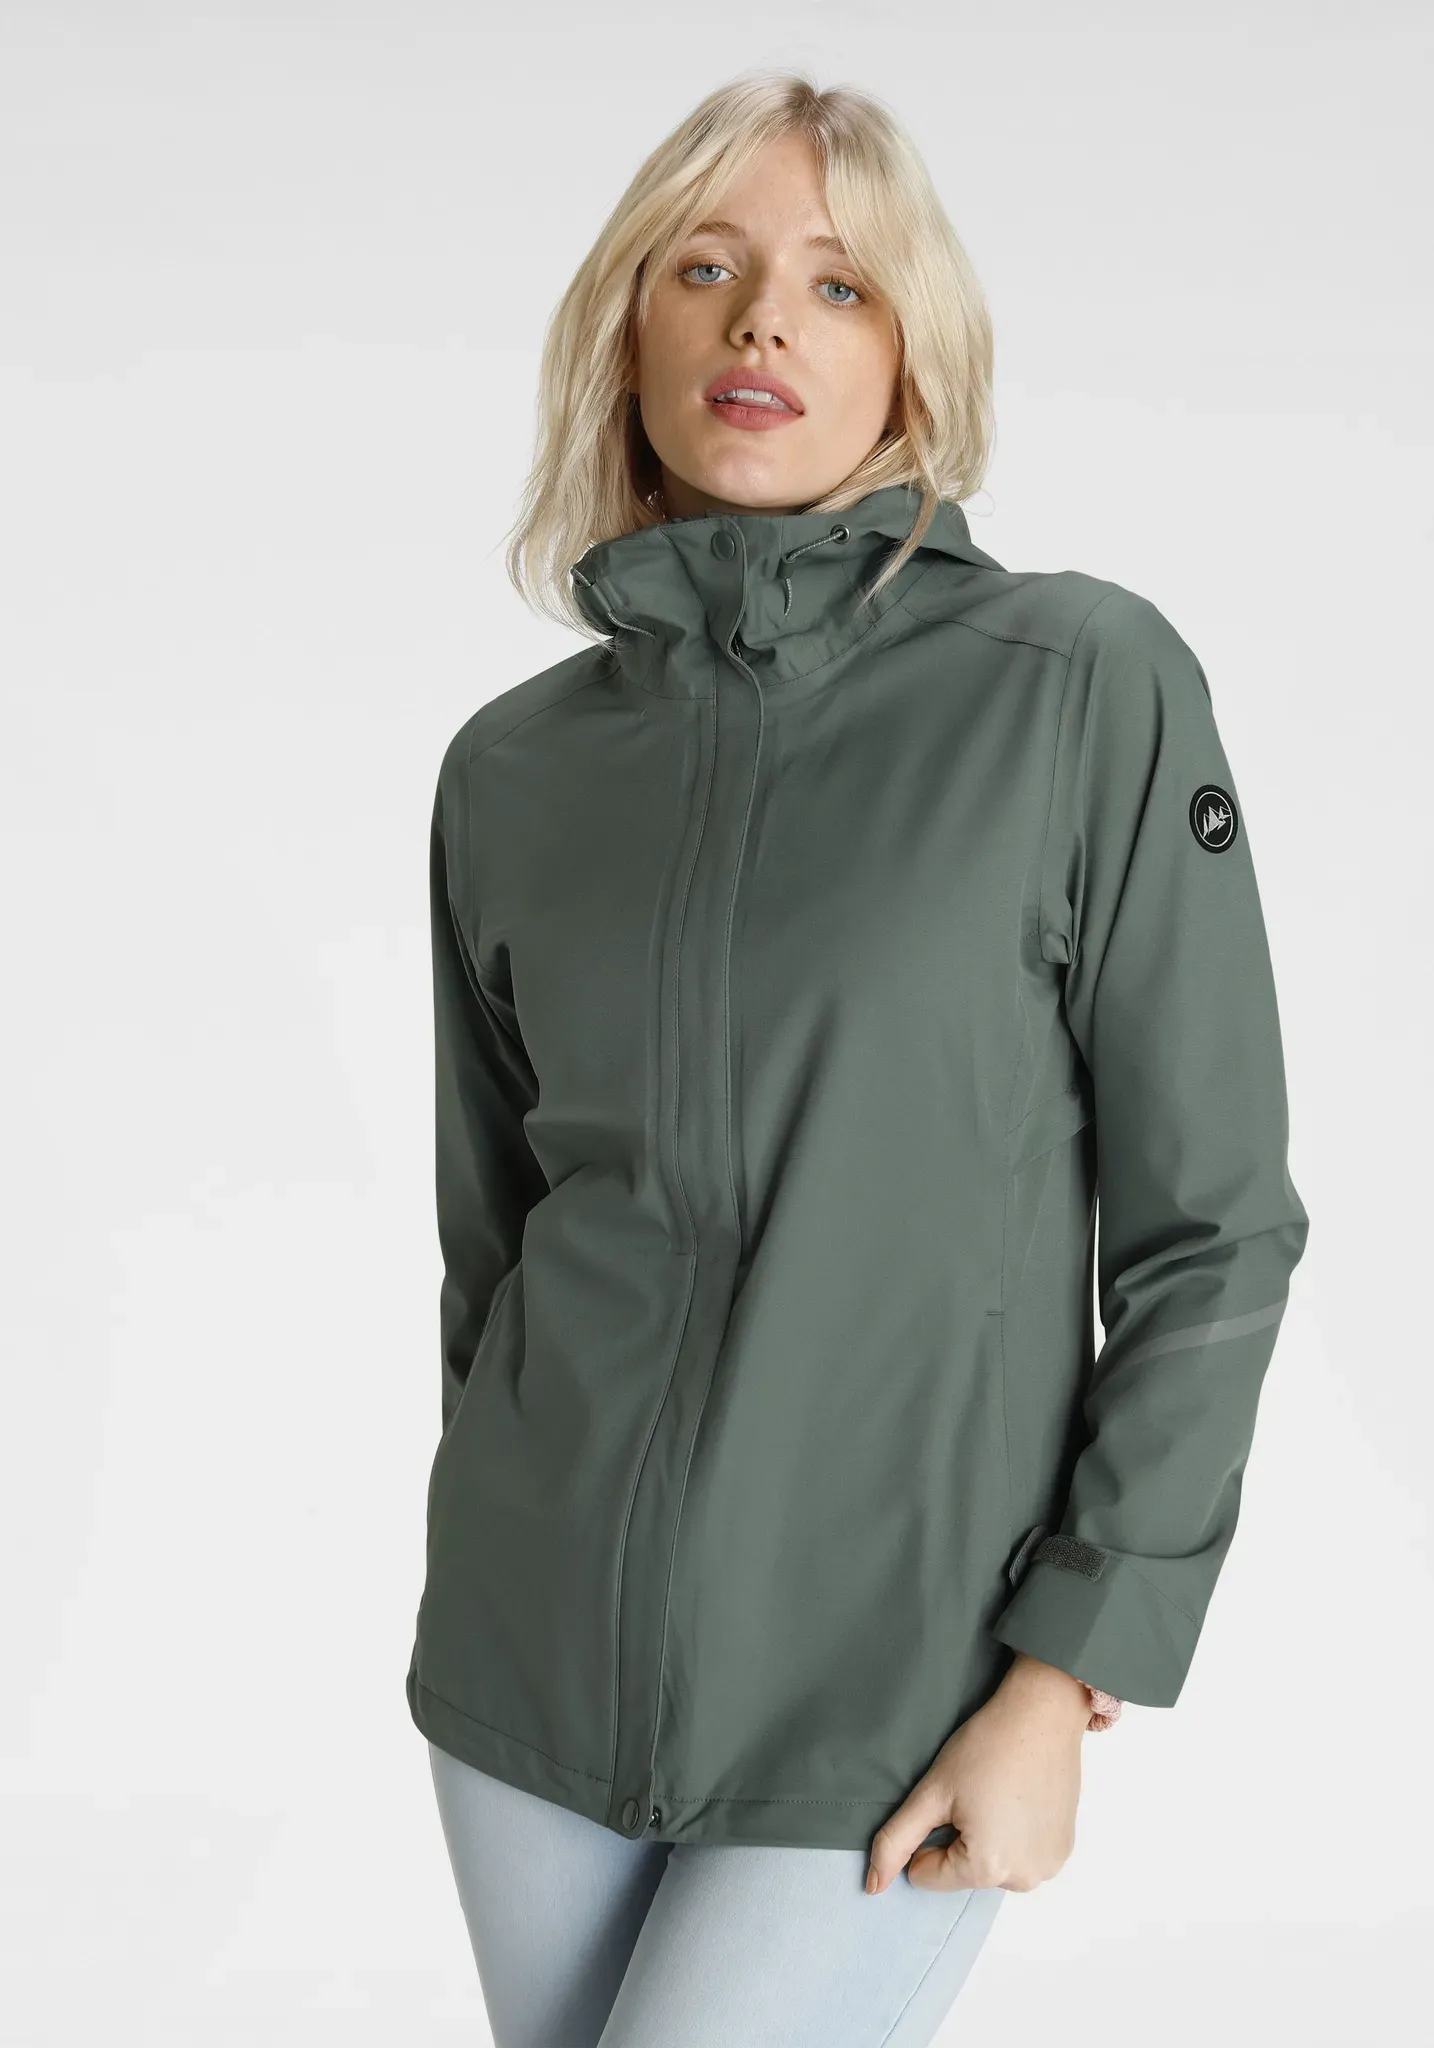 Regenjacke POLARINO Gr. 44, grün (salbeigrün) Damen Jacken Sportjacken packable mit Reflektorstreifen